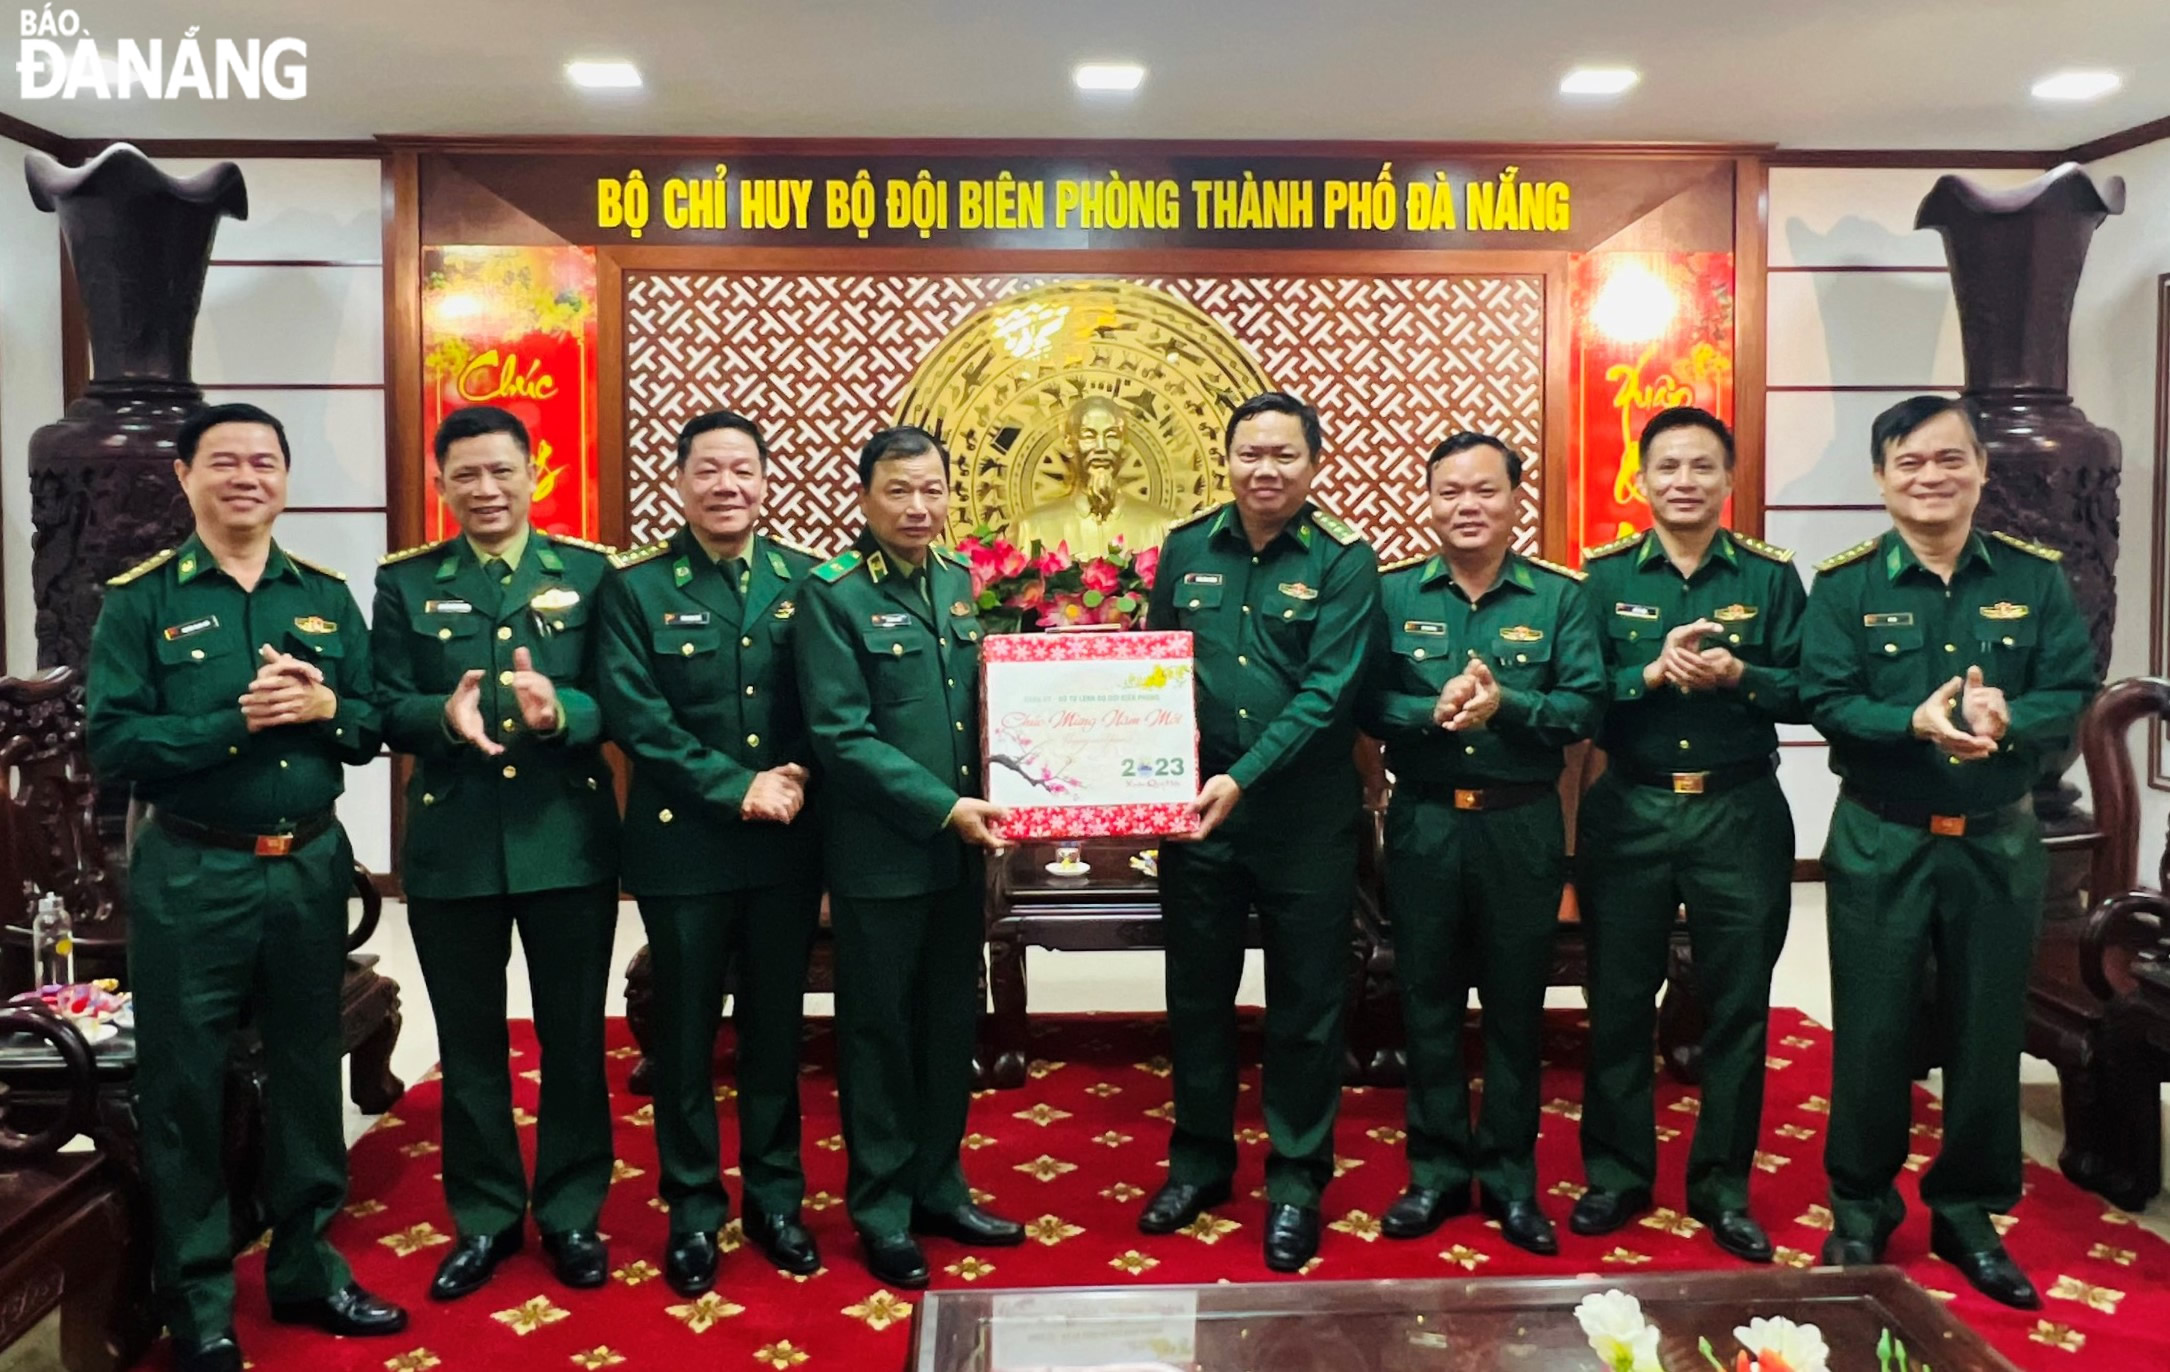 Thiếu tướng Lê Văn Phúc (thứ 4, trái sang) tặng quà, chúc Tết cán bộ, chiến sĩ BĐBP thành phố.